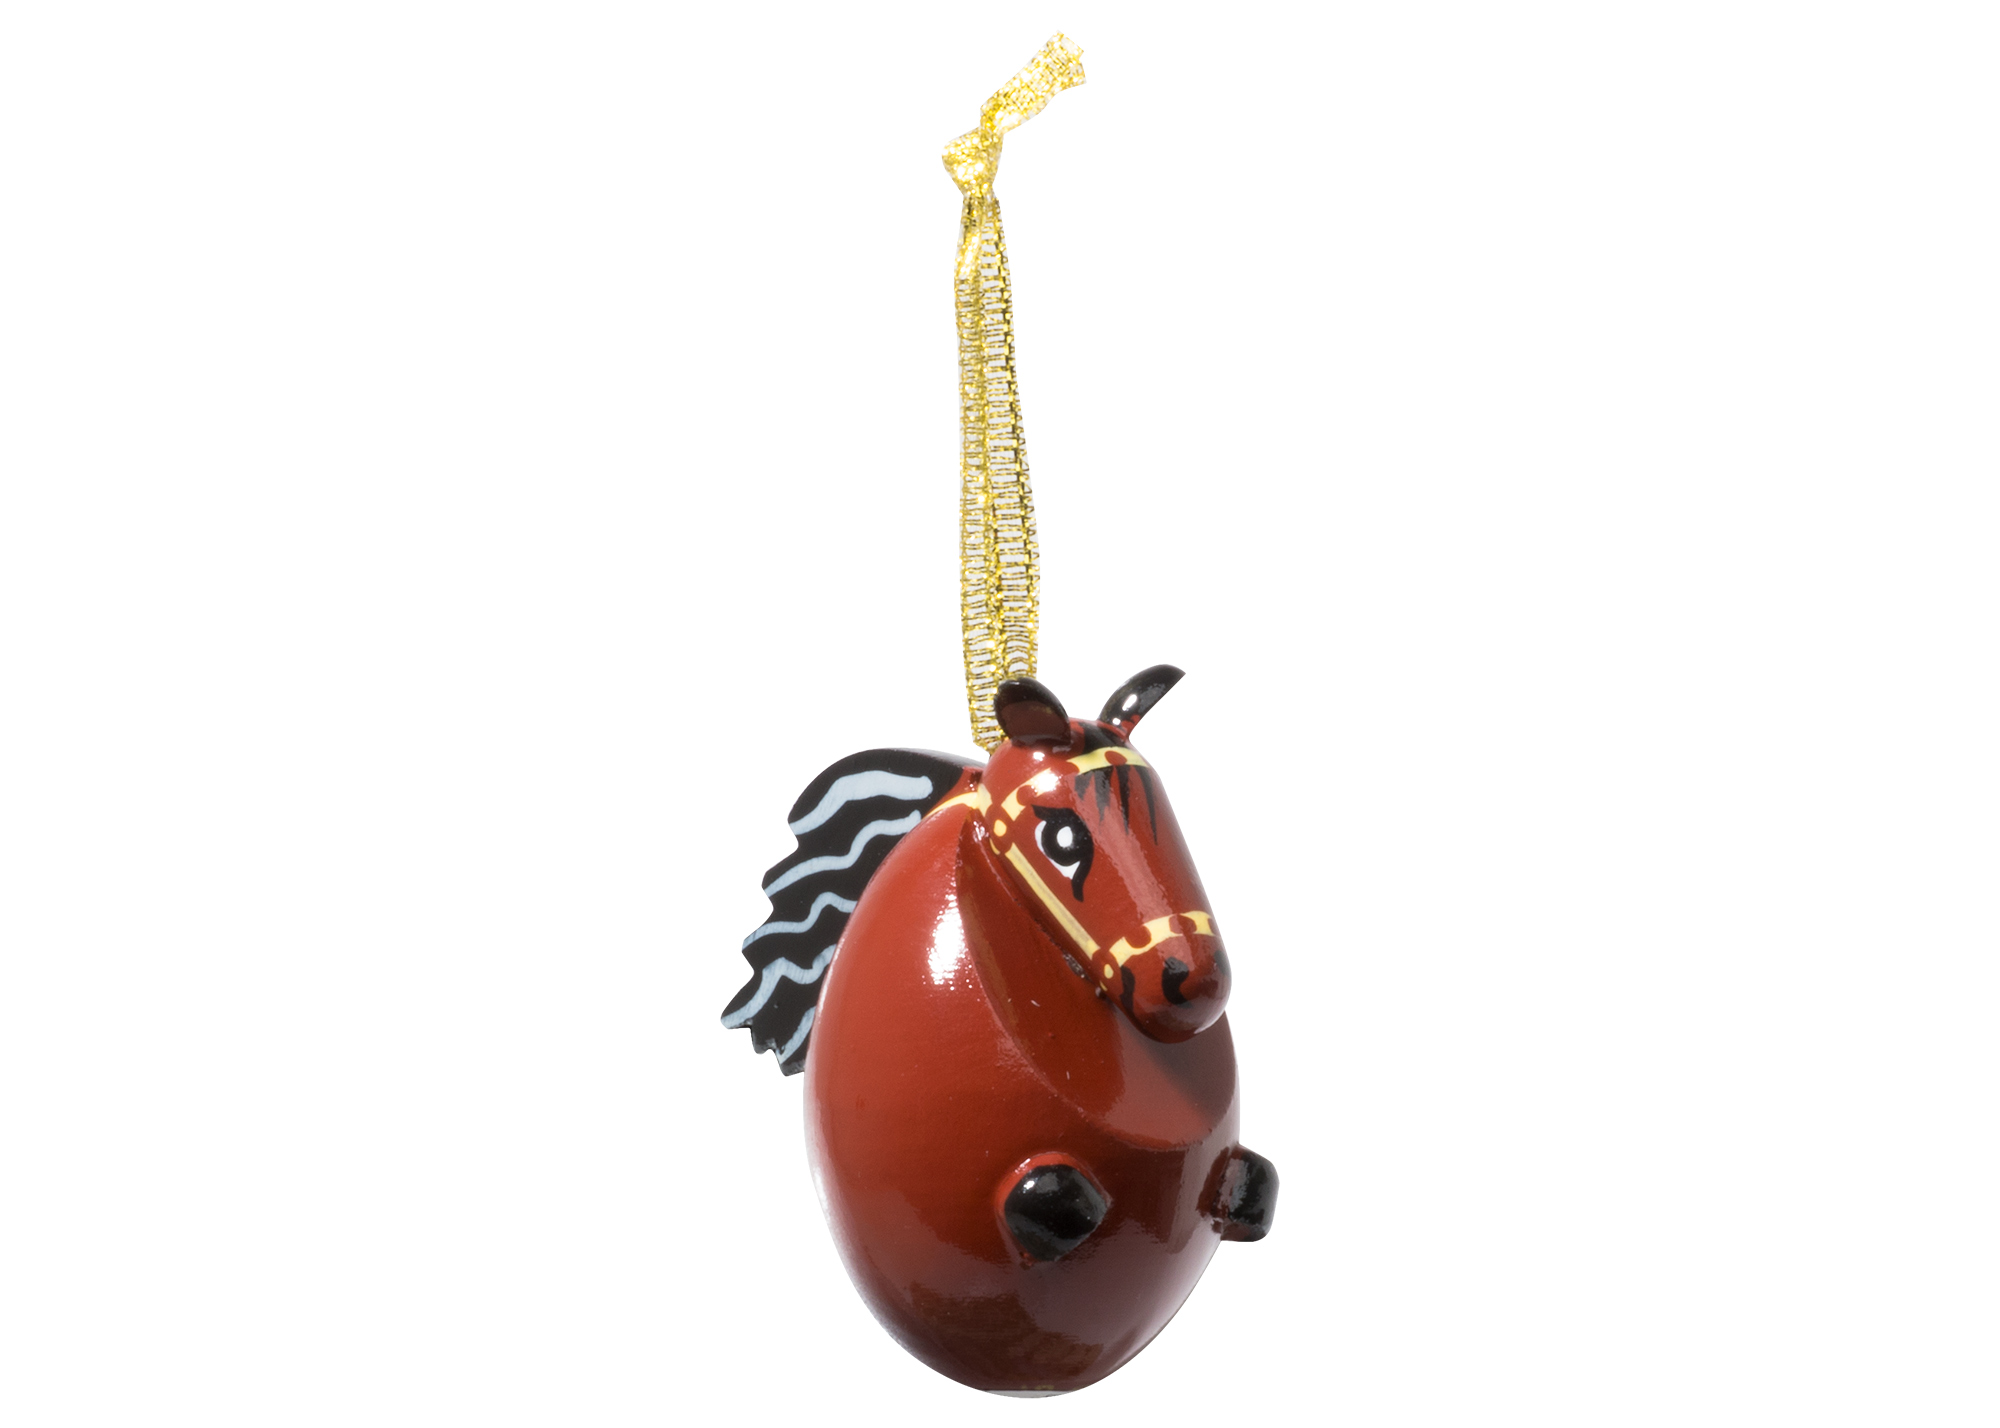 Buy Елочное украшение "Лошадь" 5 см at GoldenCockerel.com